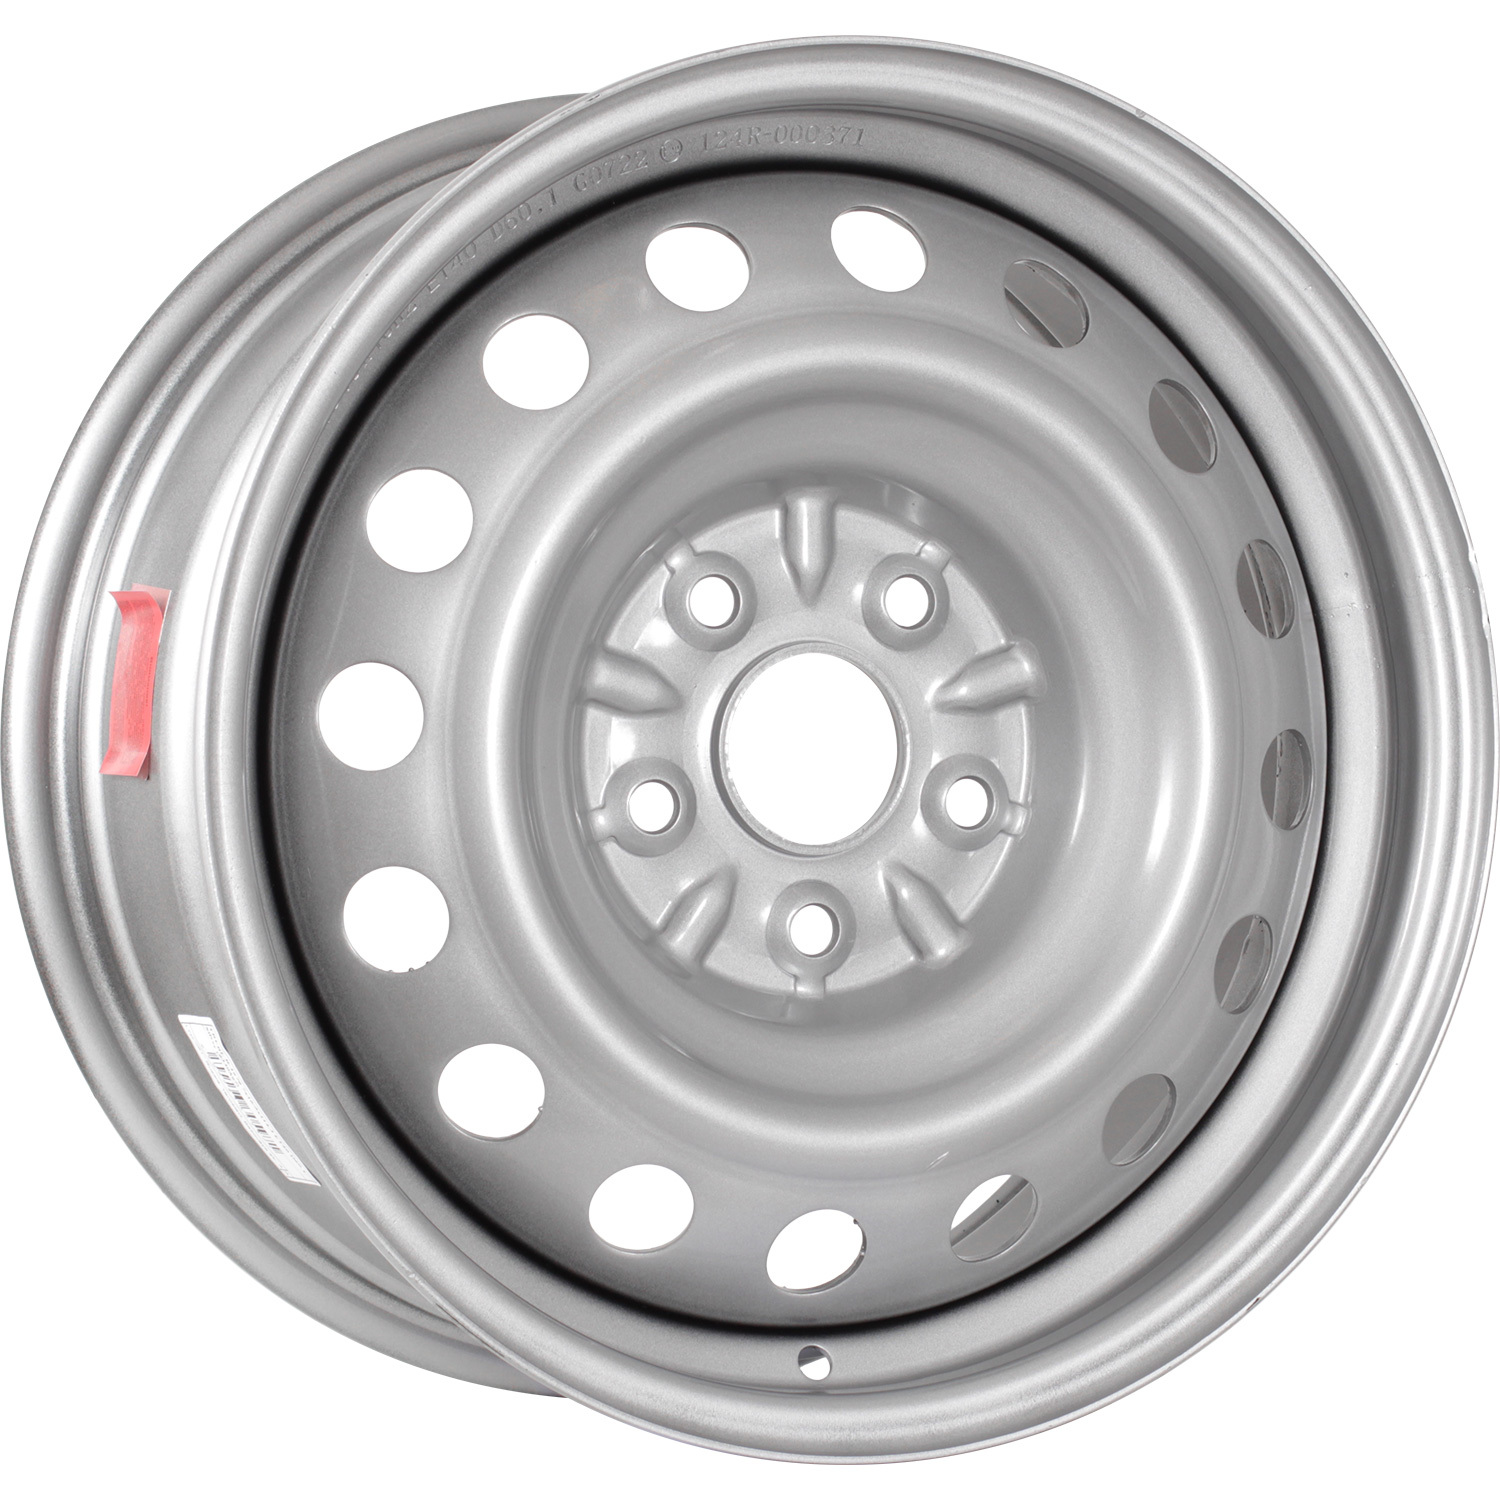 Колесный диск Trebl R-1679 Trebl 7x16/5x114.3 D60.1 ET40 Silver колесный диск trebl r 1680 trebl 7x16 5x139 7 d108 6 et35 black